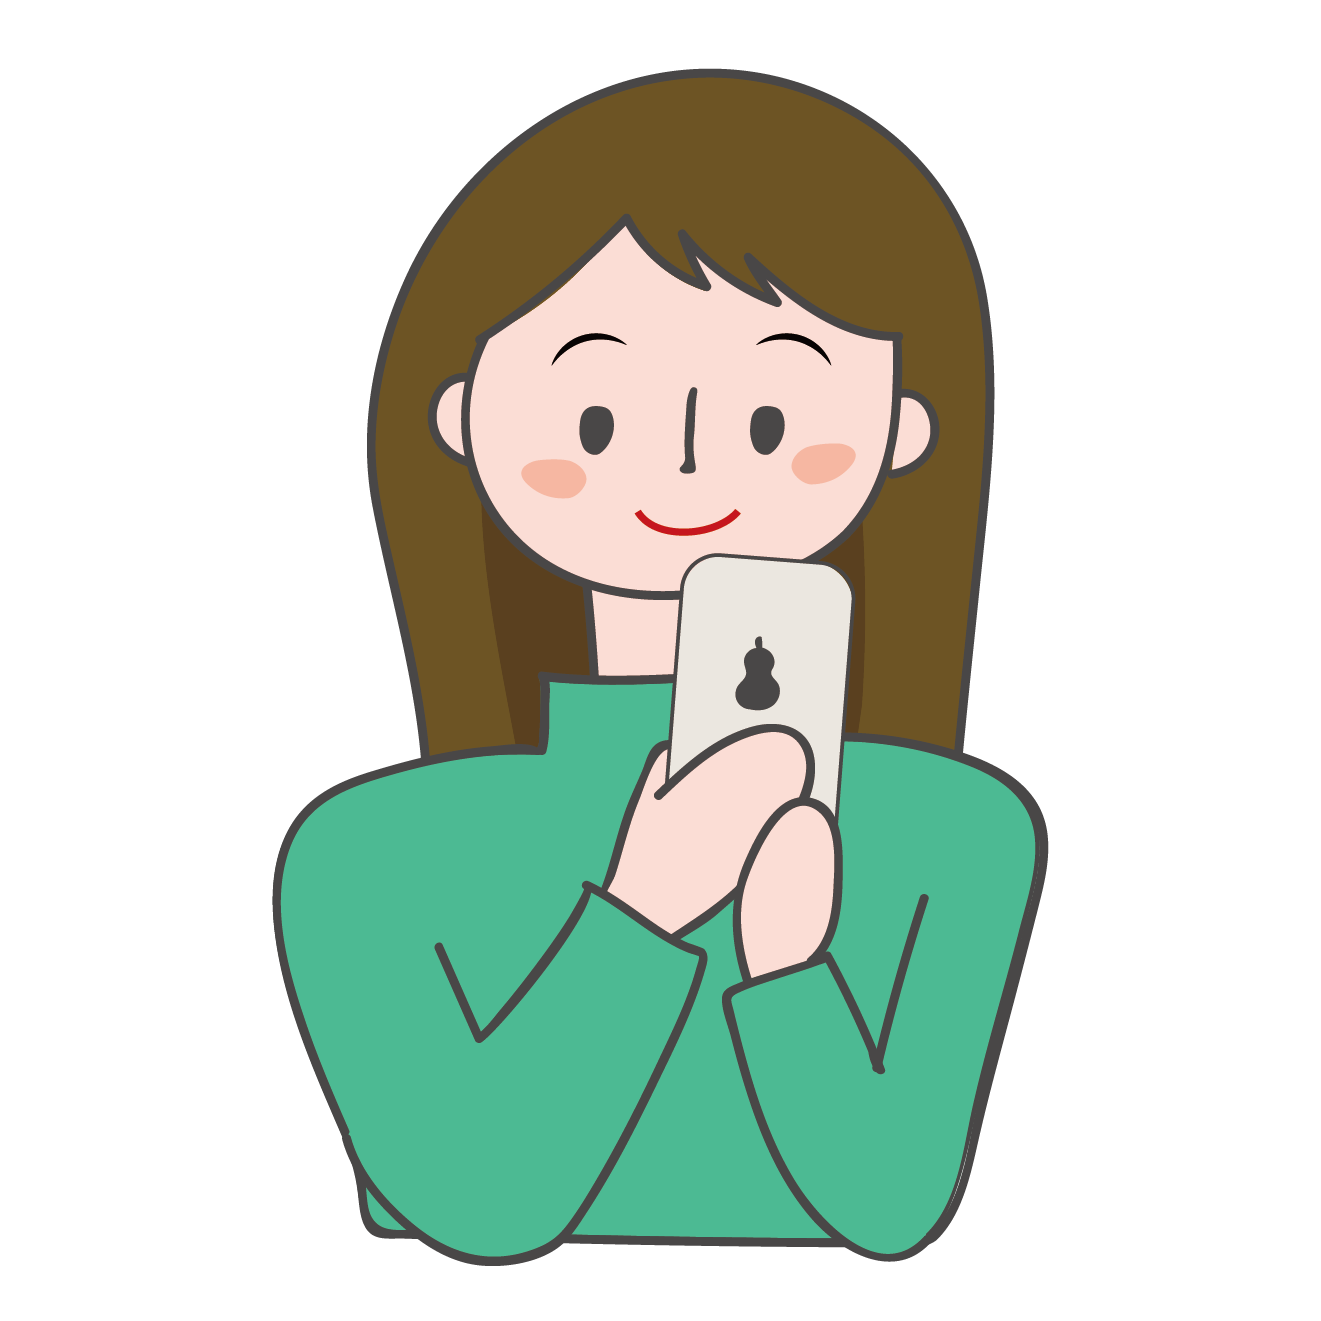 スマートフォン スマフォ 携帯電話 を見ている女性のイラスト 商用フリー 無料 のイラスト素材なら イラストマンション